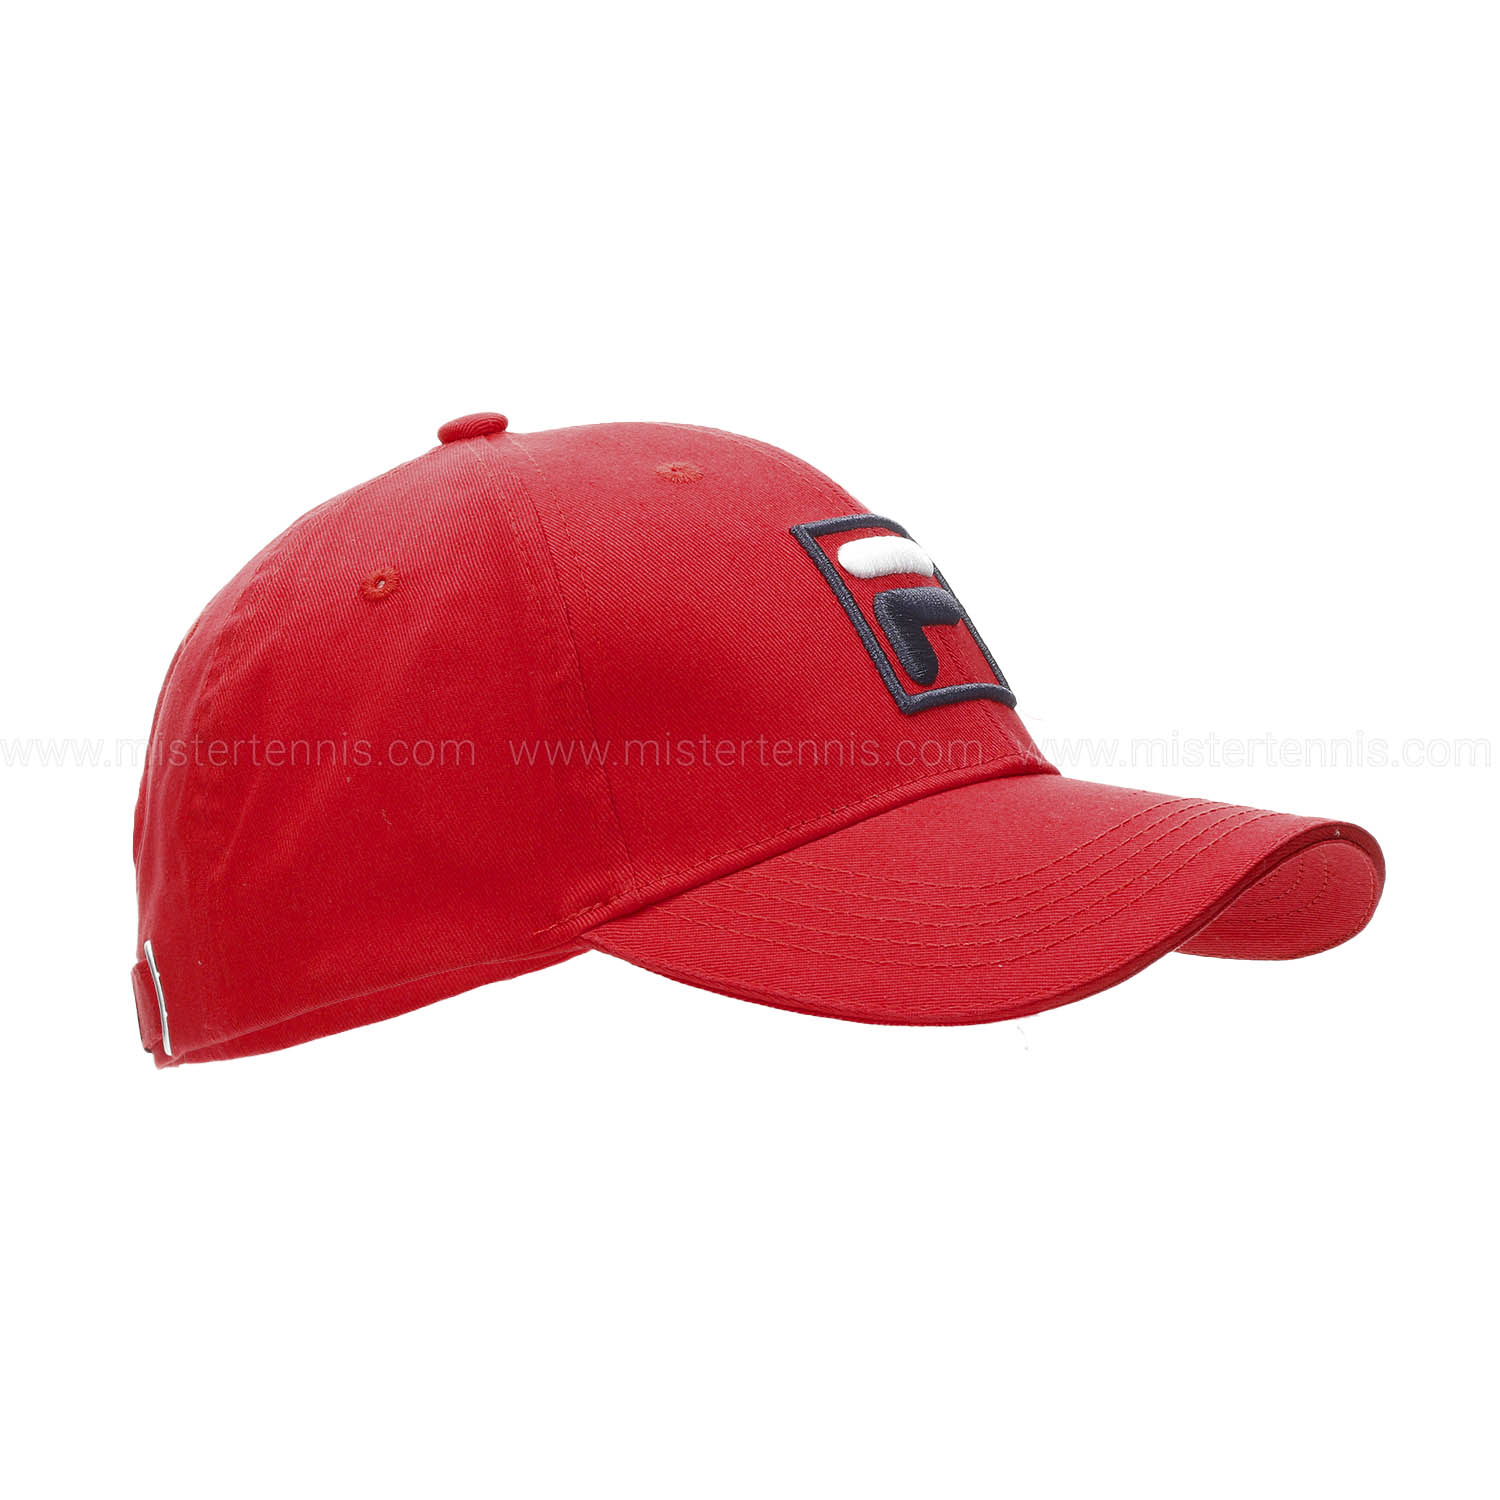 Fila Forze Cap - Red